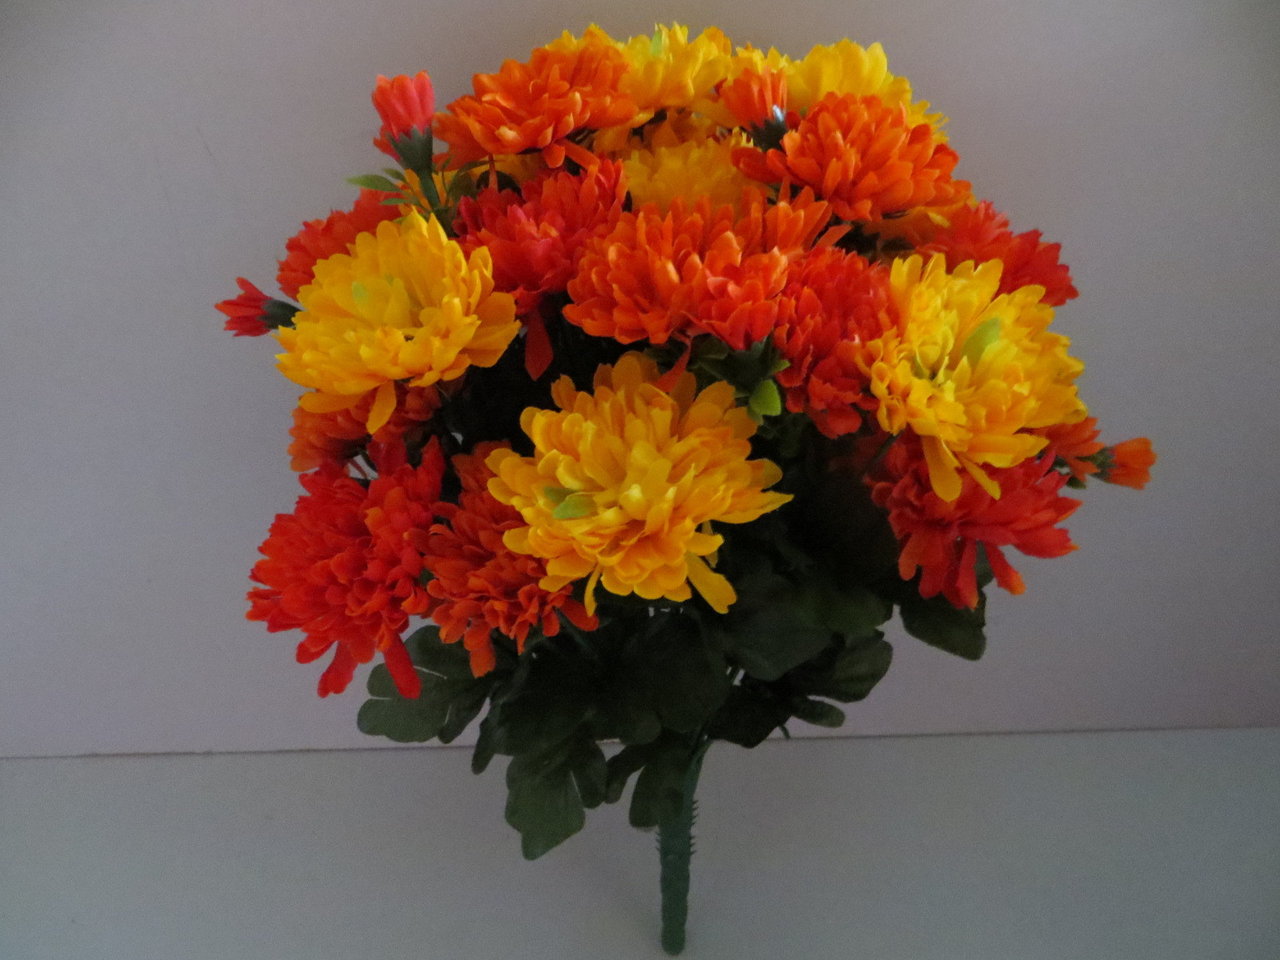 Chrysanthemenstrauß mit 36 Stielen, 36 großen Blüten und 16 kleinen Blüten Farbe: orange-rot/gelb